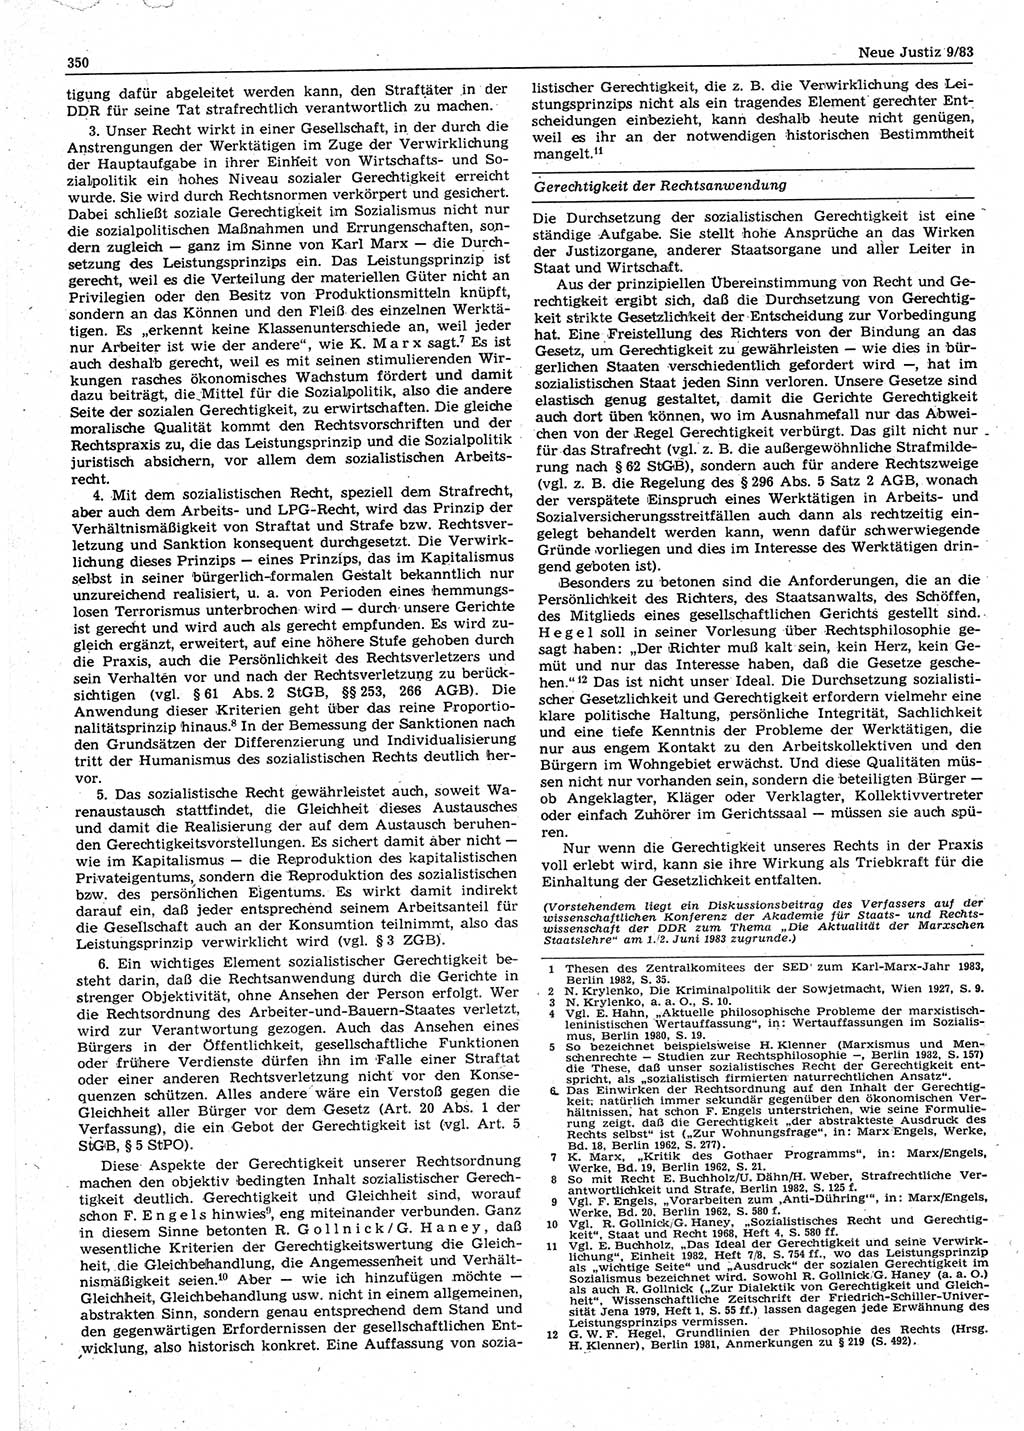 Neue Justiz (NJ), Zeitschrift für sozialistisches Recht und Gesetzlichkeit [Deutsche Demokratische Republik (DDR)], 37. Jahrgang 1983, Seite 350 (NJ DDR 1983, S. 350)